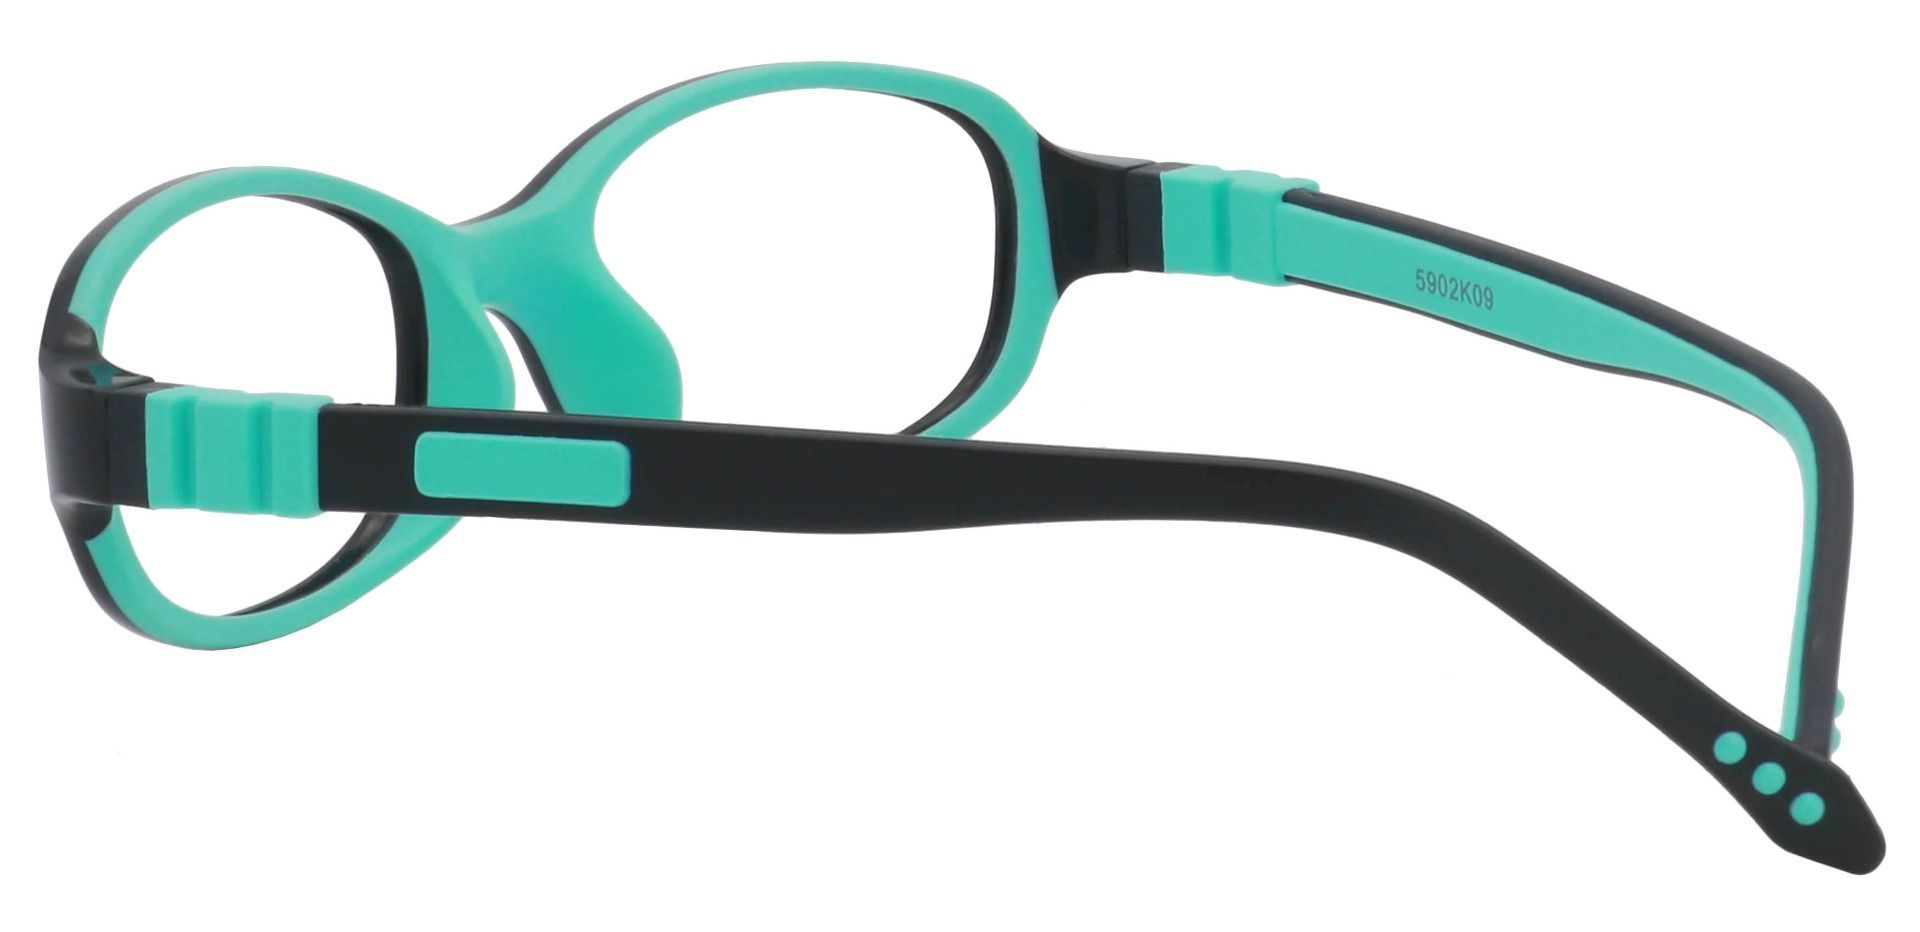 Toucan Rectangle Prescription Glasses - Black/aqua